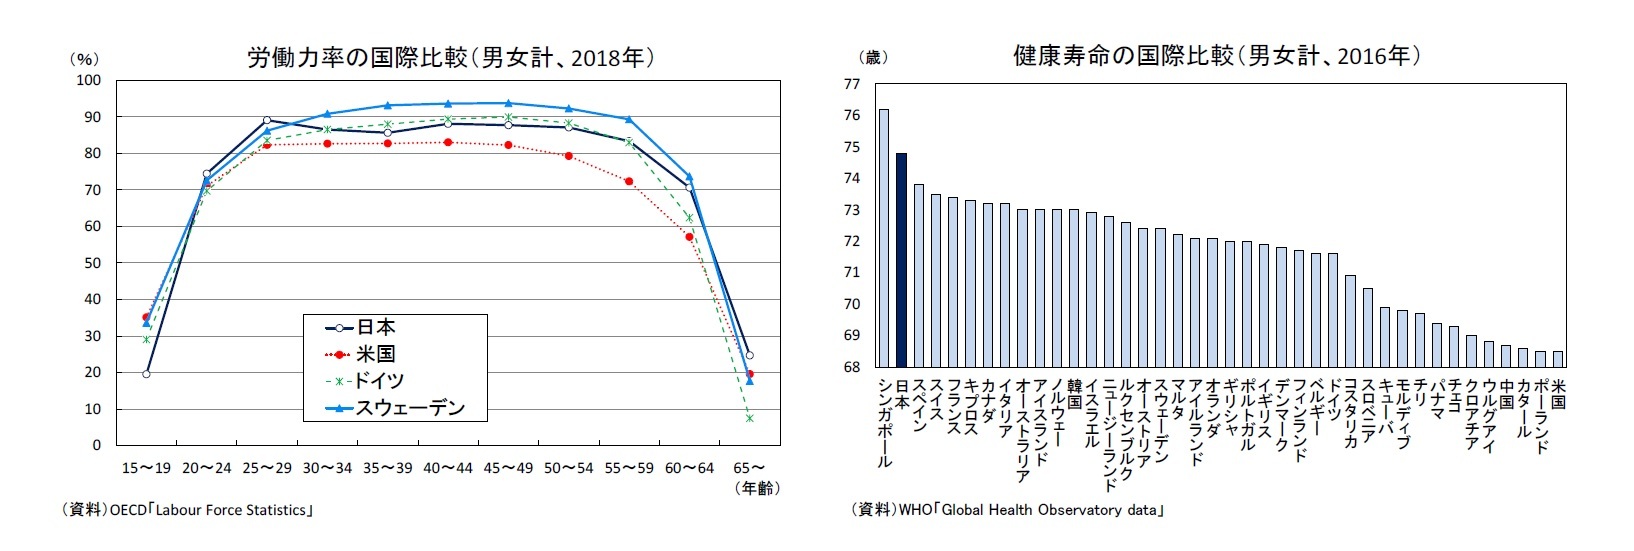 労働力率の国際比較（男女計、2018年）/健康寿命の国際比較（男女計、2016年）